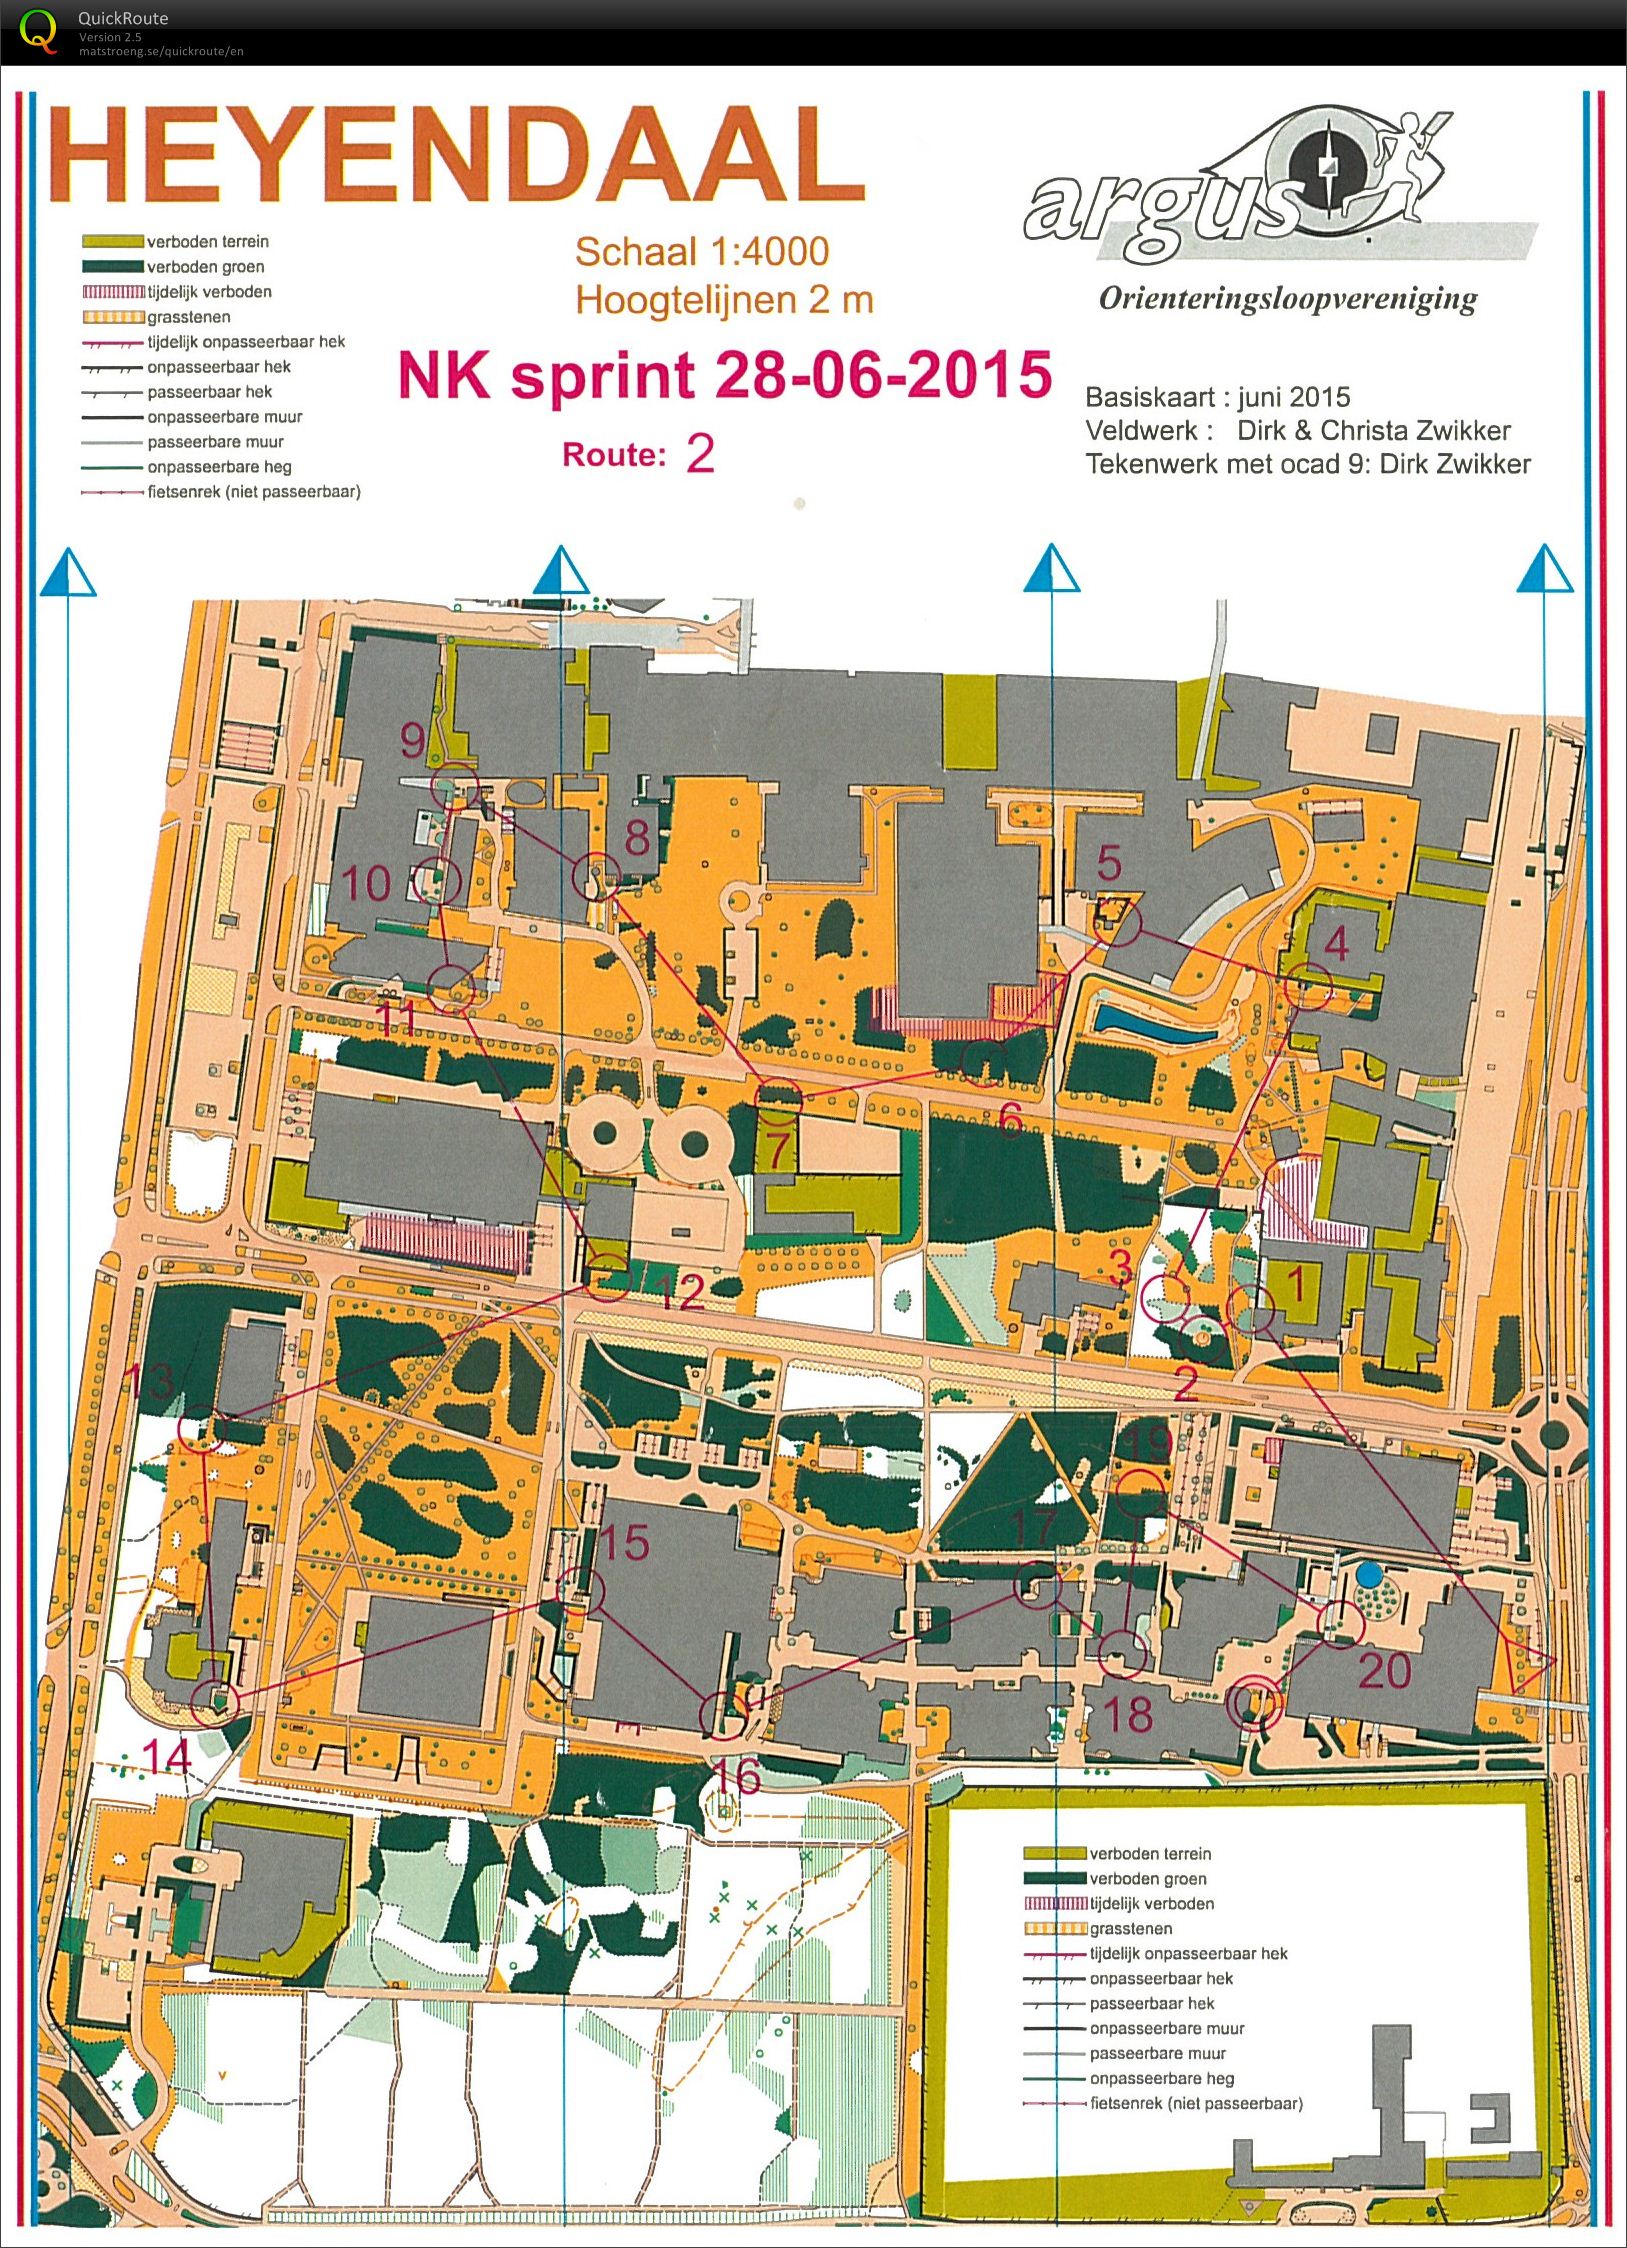 NK Sprint Heyendaal (28-06-2015)